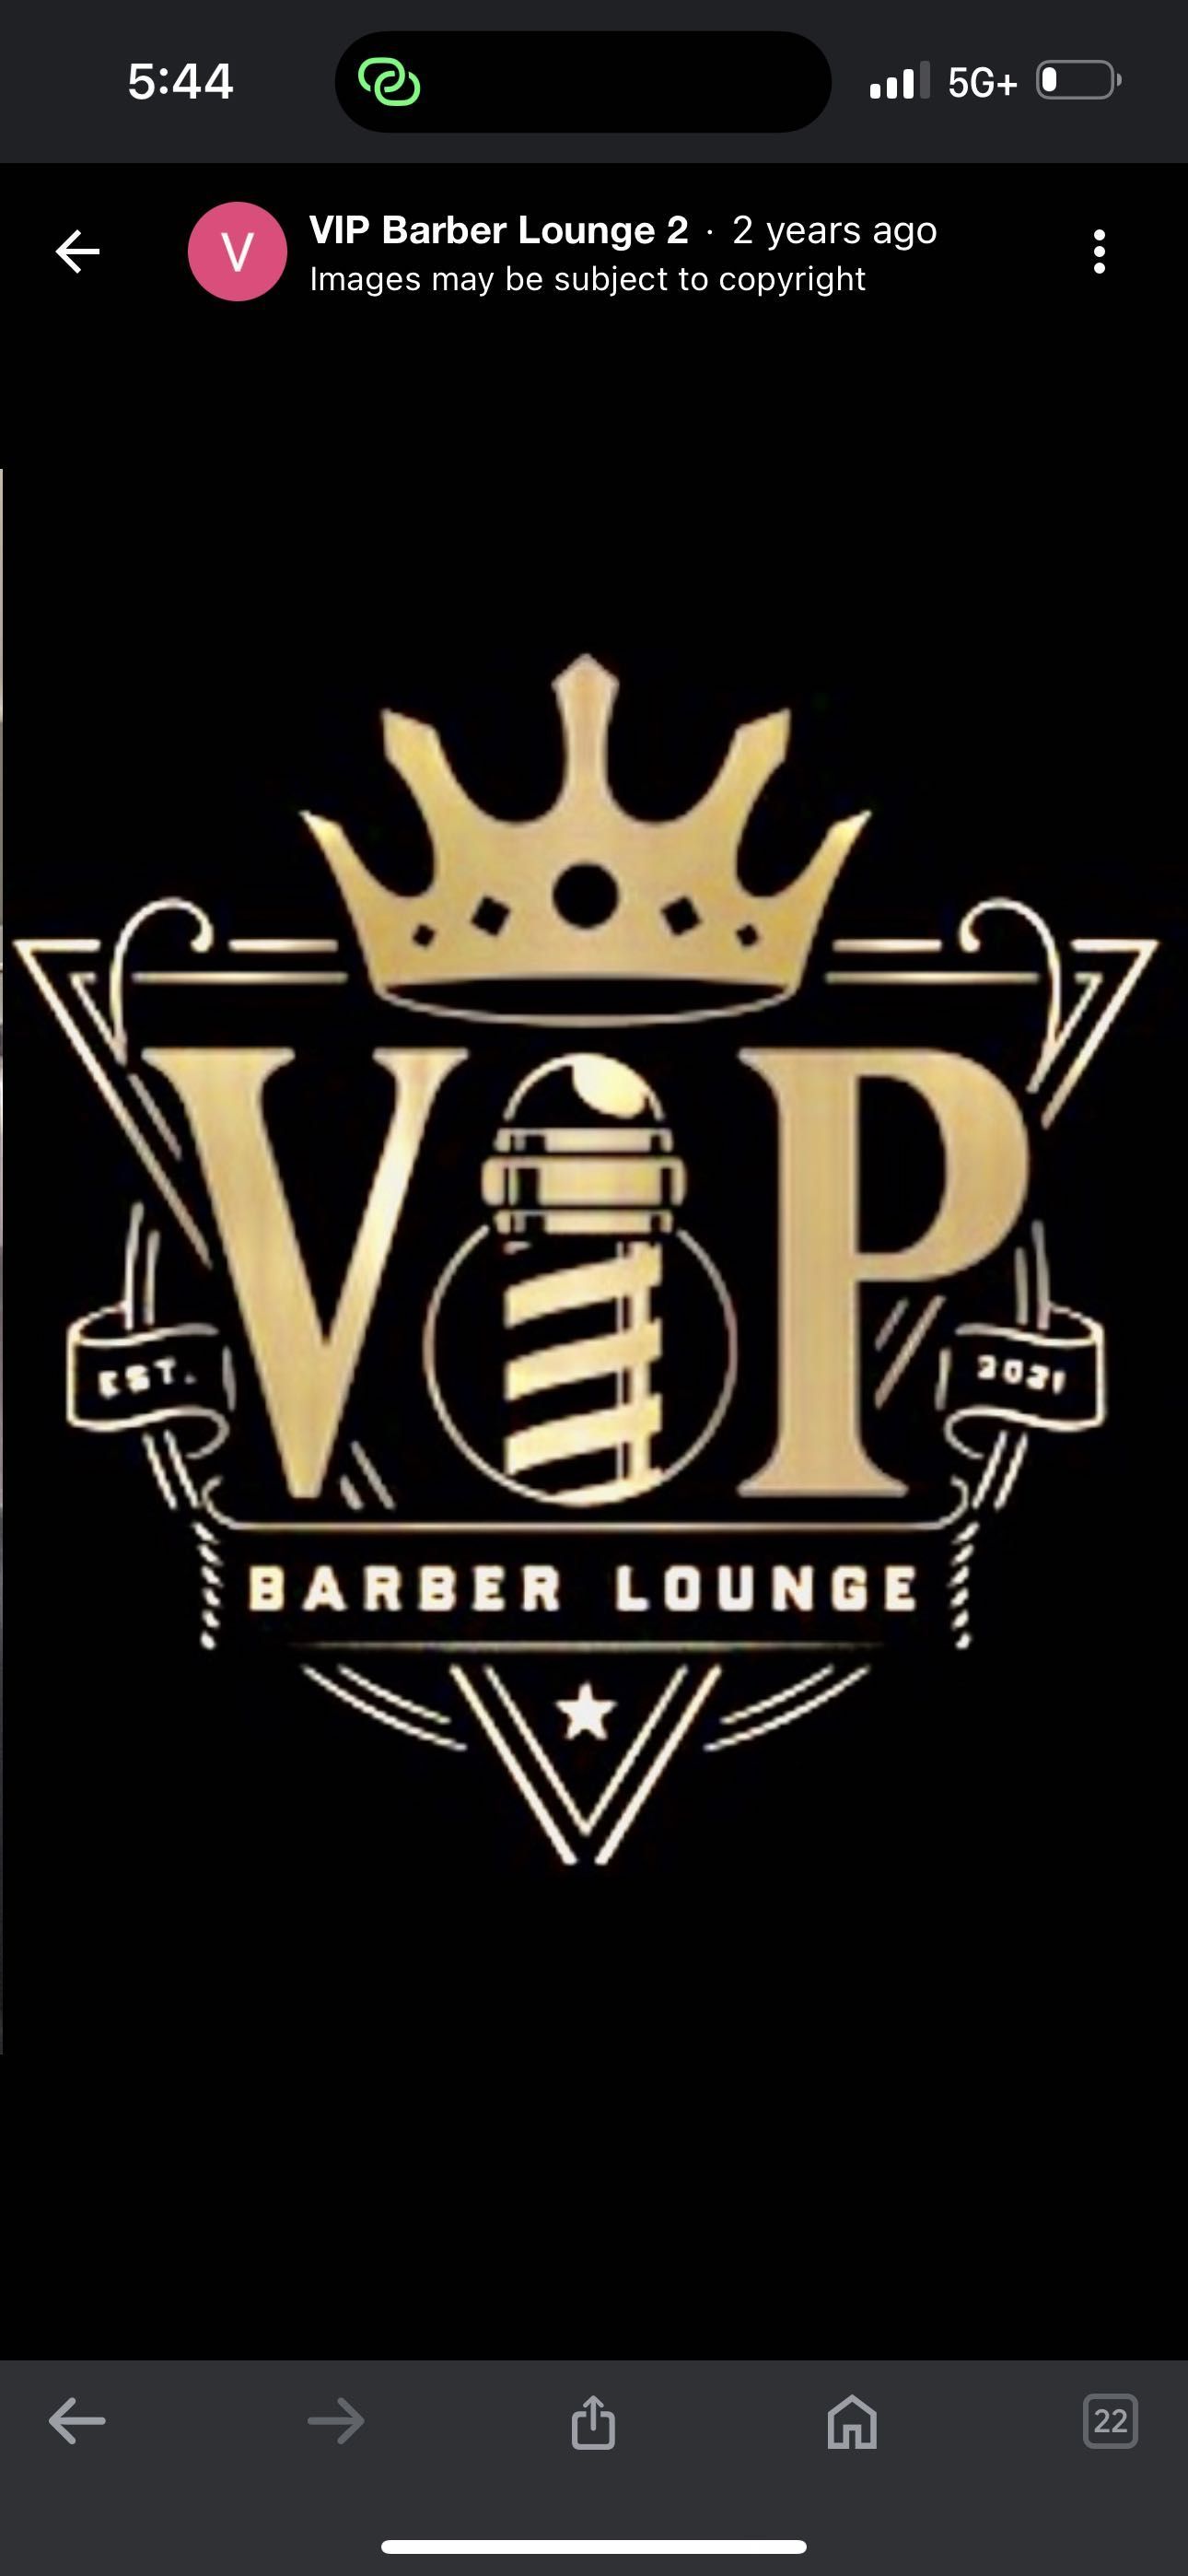 Vip Barber Lounge, 10013 east Hampden avenue, Denver, 80231